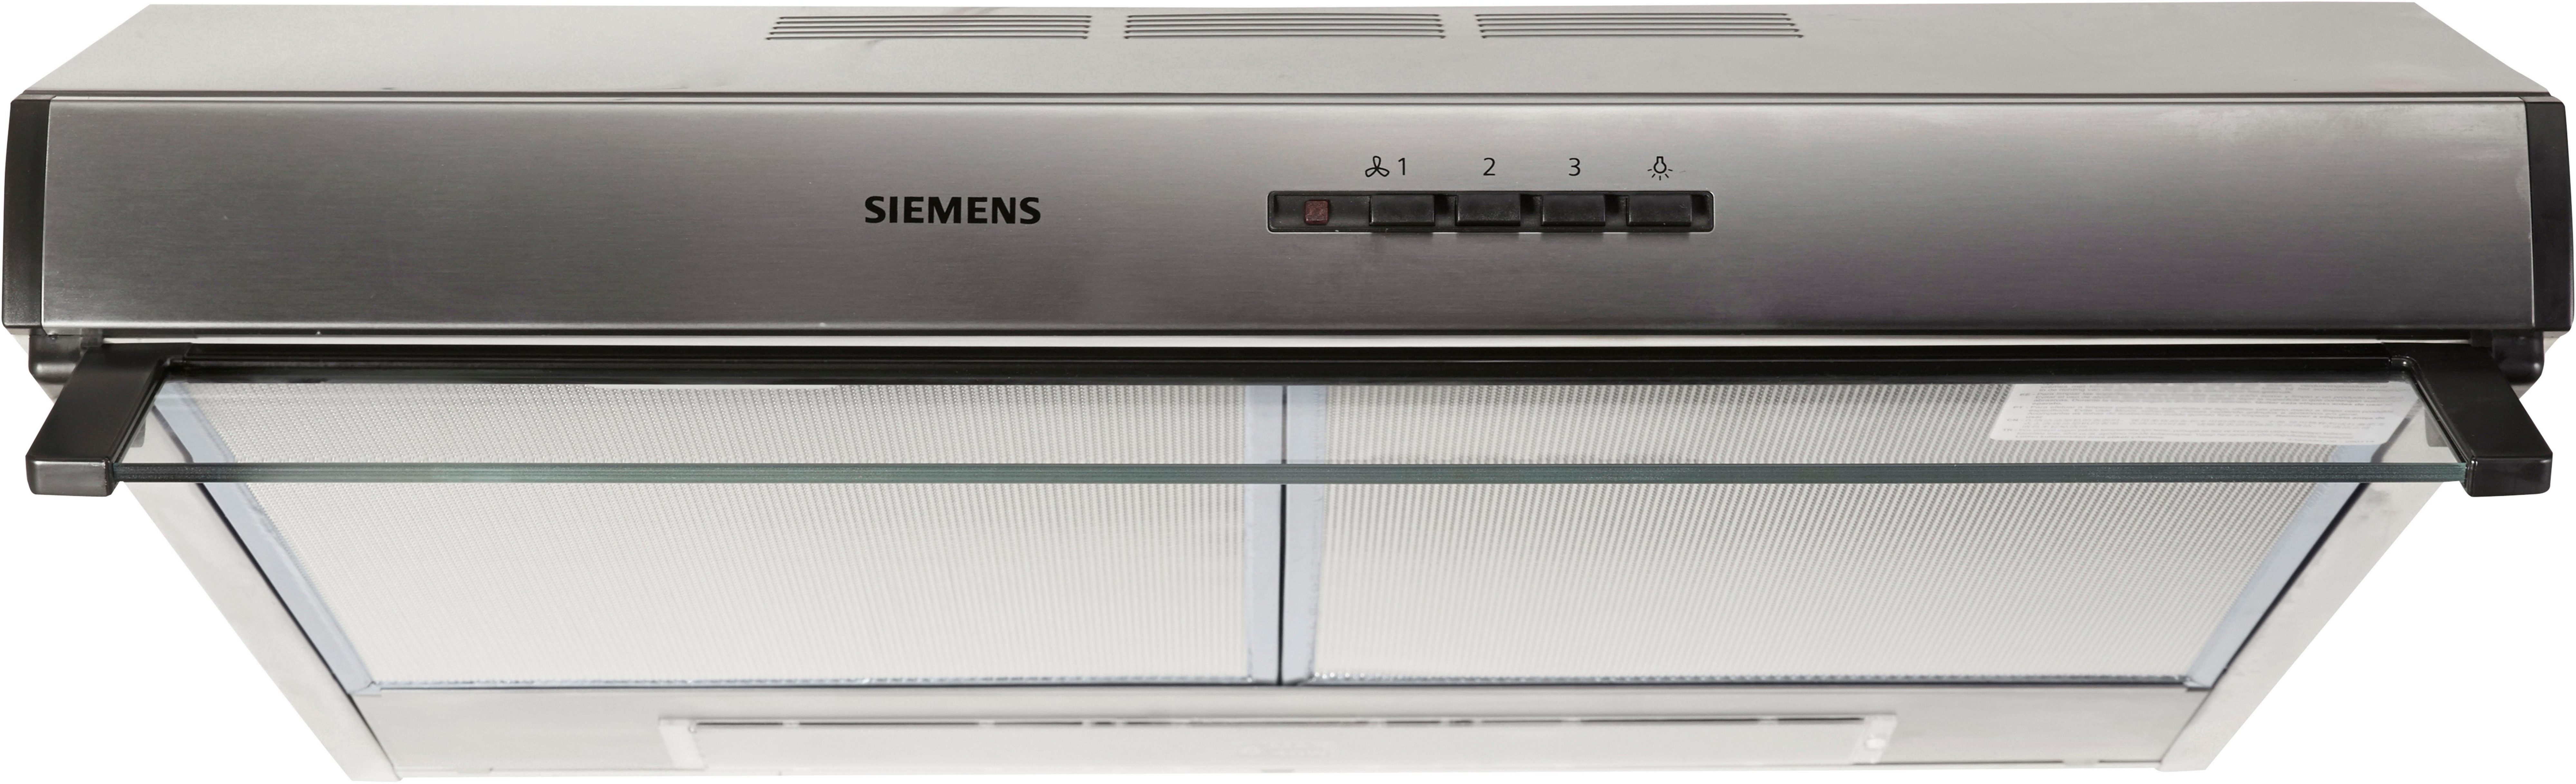 SIEMENS Unterbauhaube Serie iQ100 LU63LCC50, Die Lüfterleistung von 350  m³/h sorgt für frische Luft beim Kochen